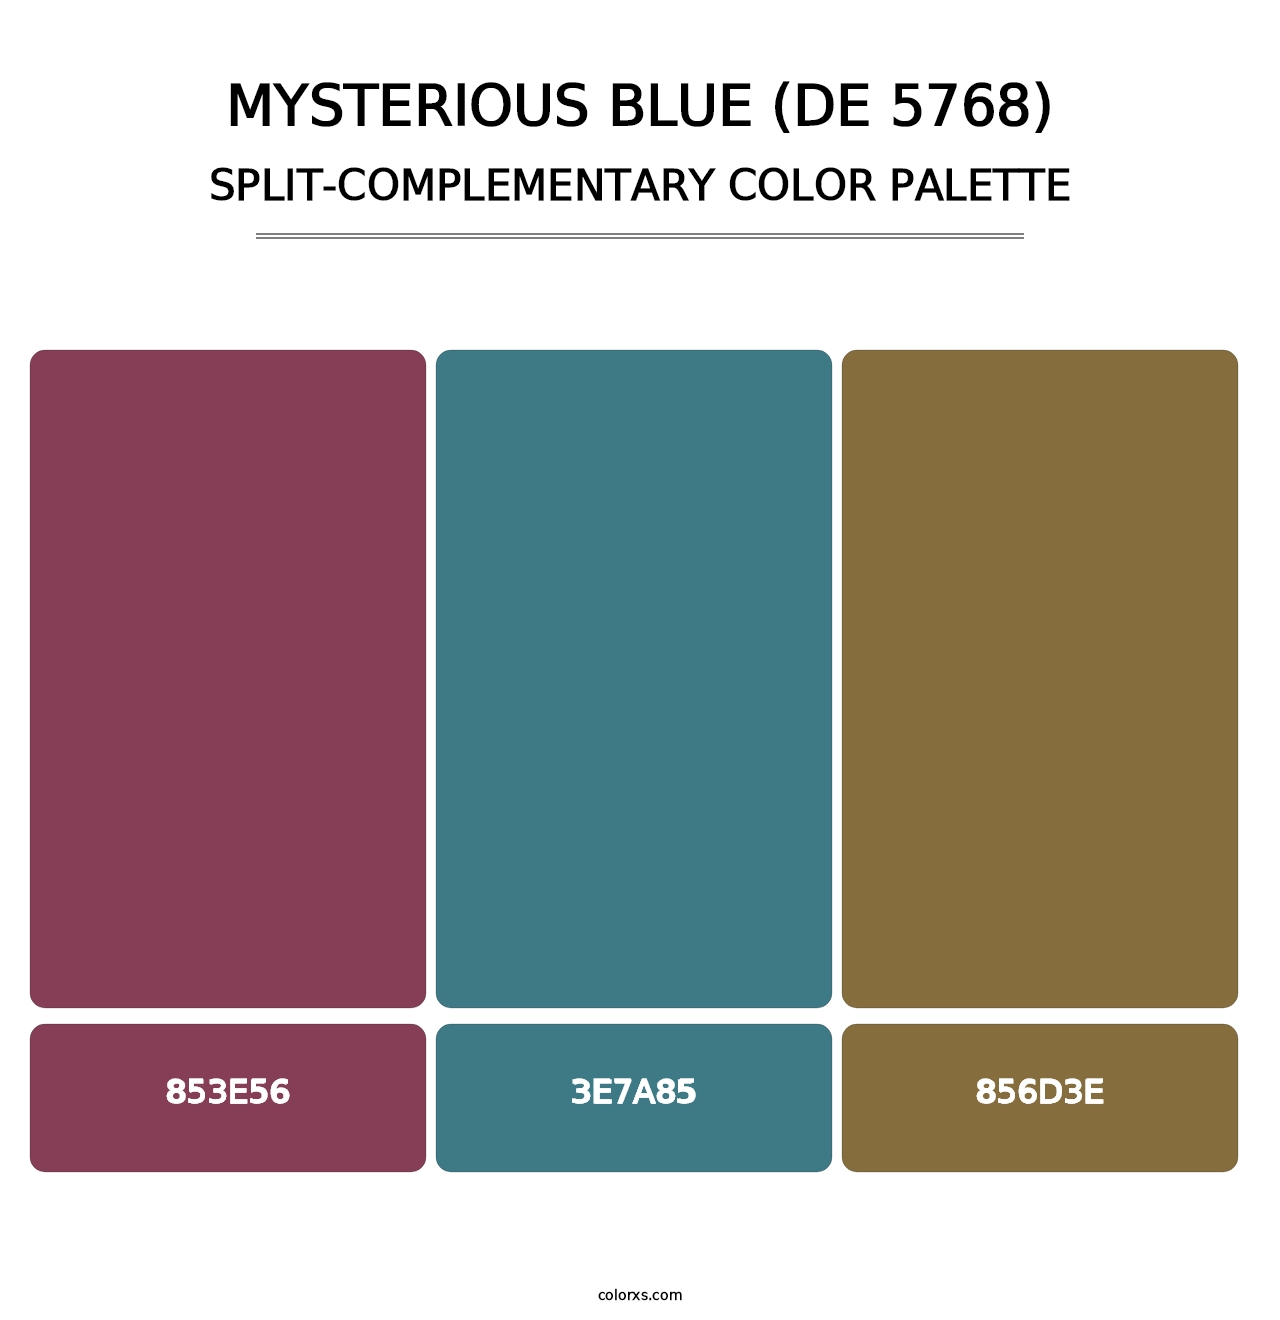 Mysterious Blue (DE 5768) - Split-Complementary Color Palette